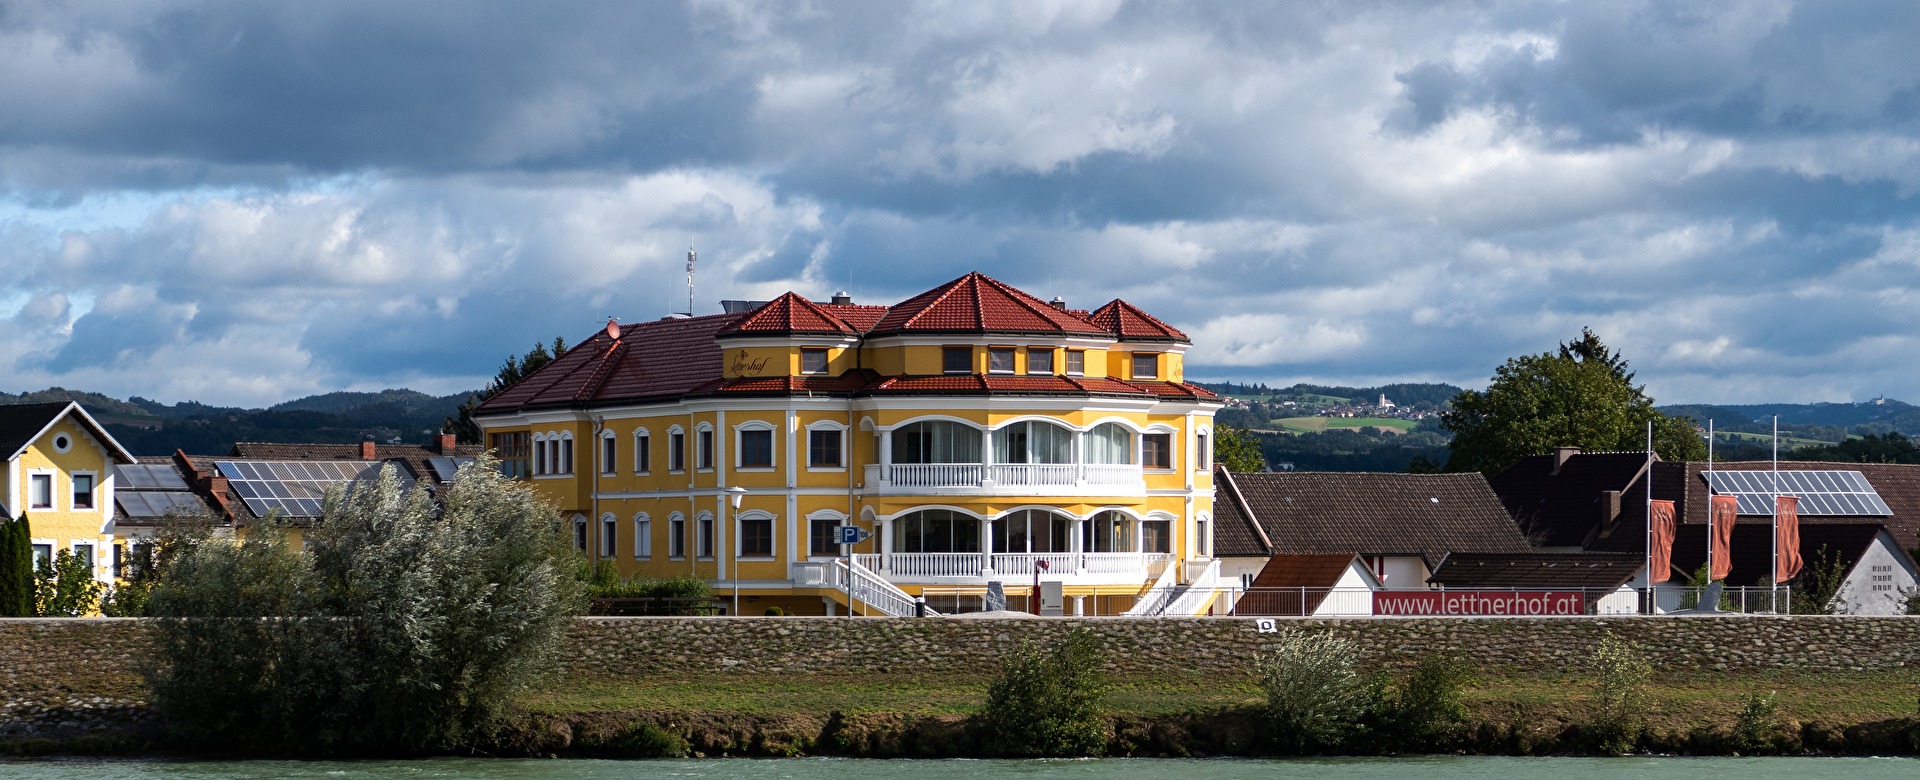 Donauhotel Lettnerhof Niederösterreich